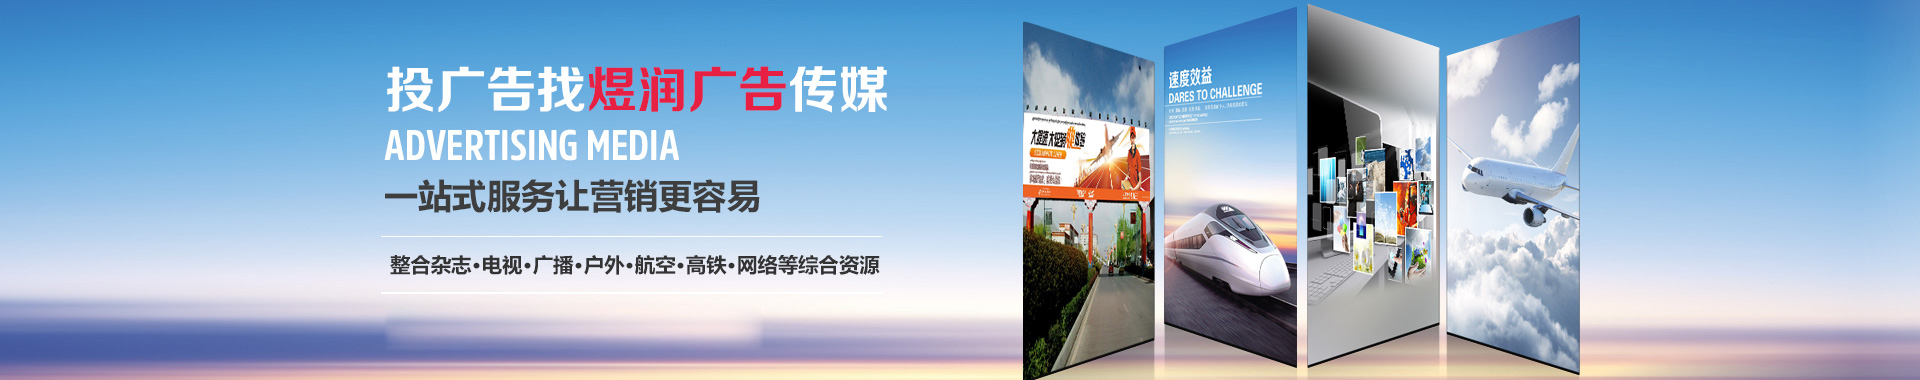 江苏音乐广播广告电话,FM89.7广播2020年广告投放价格